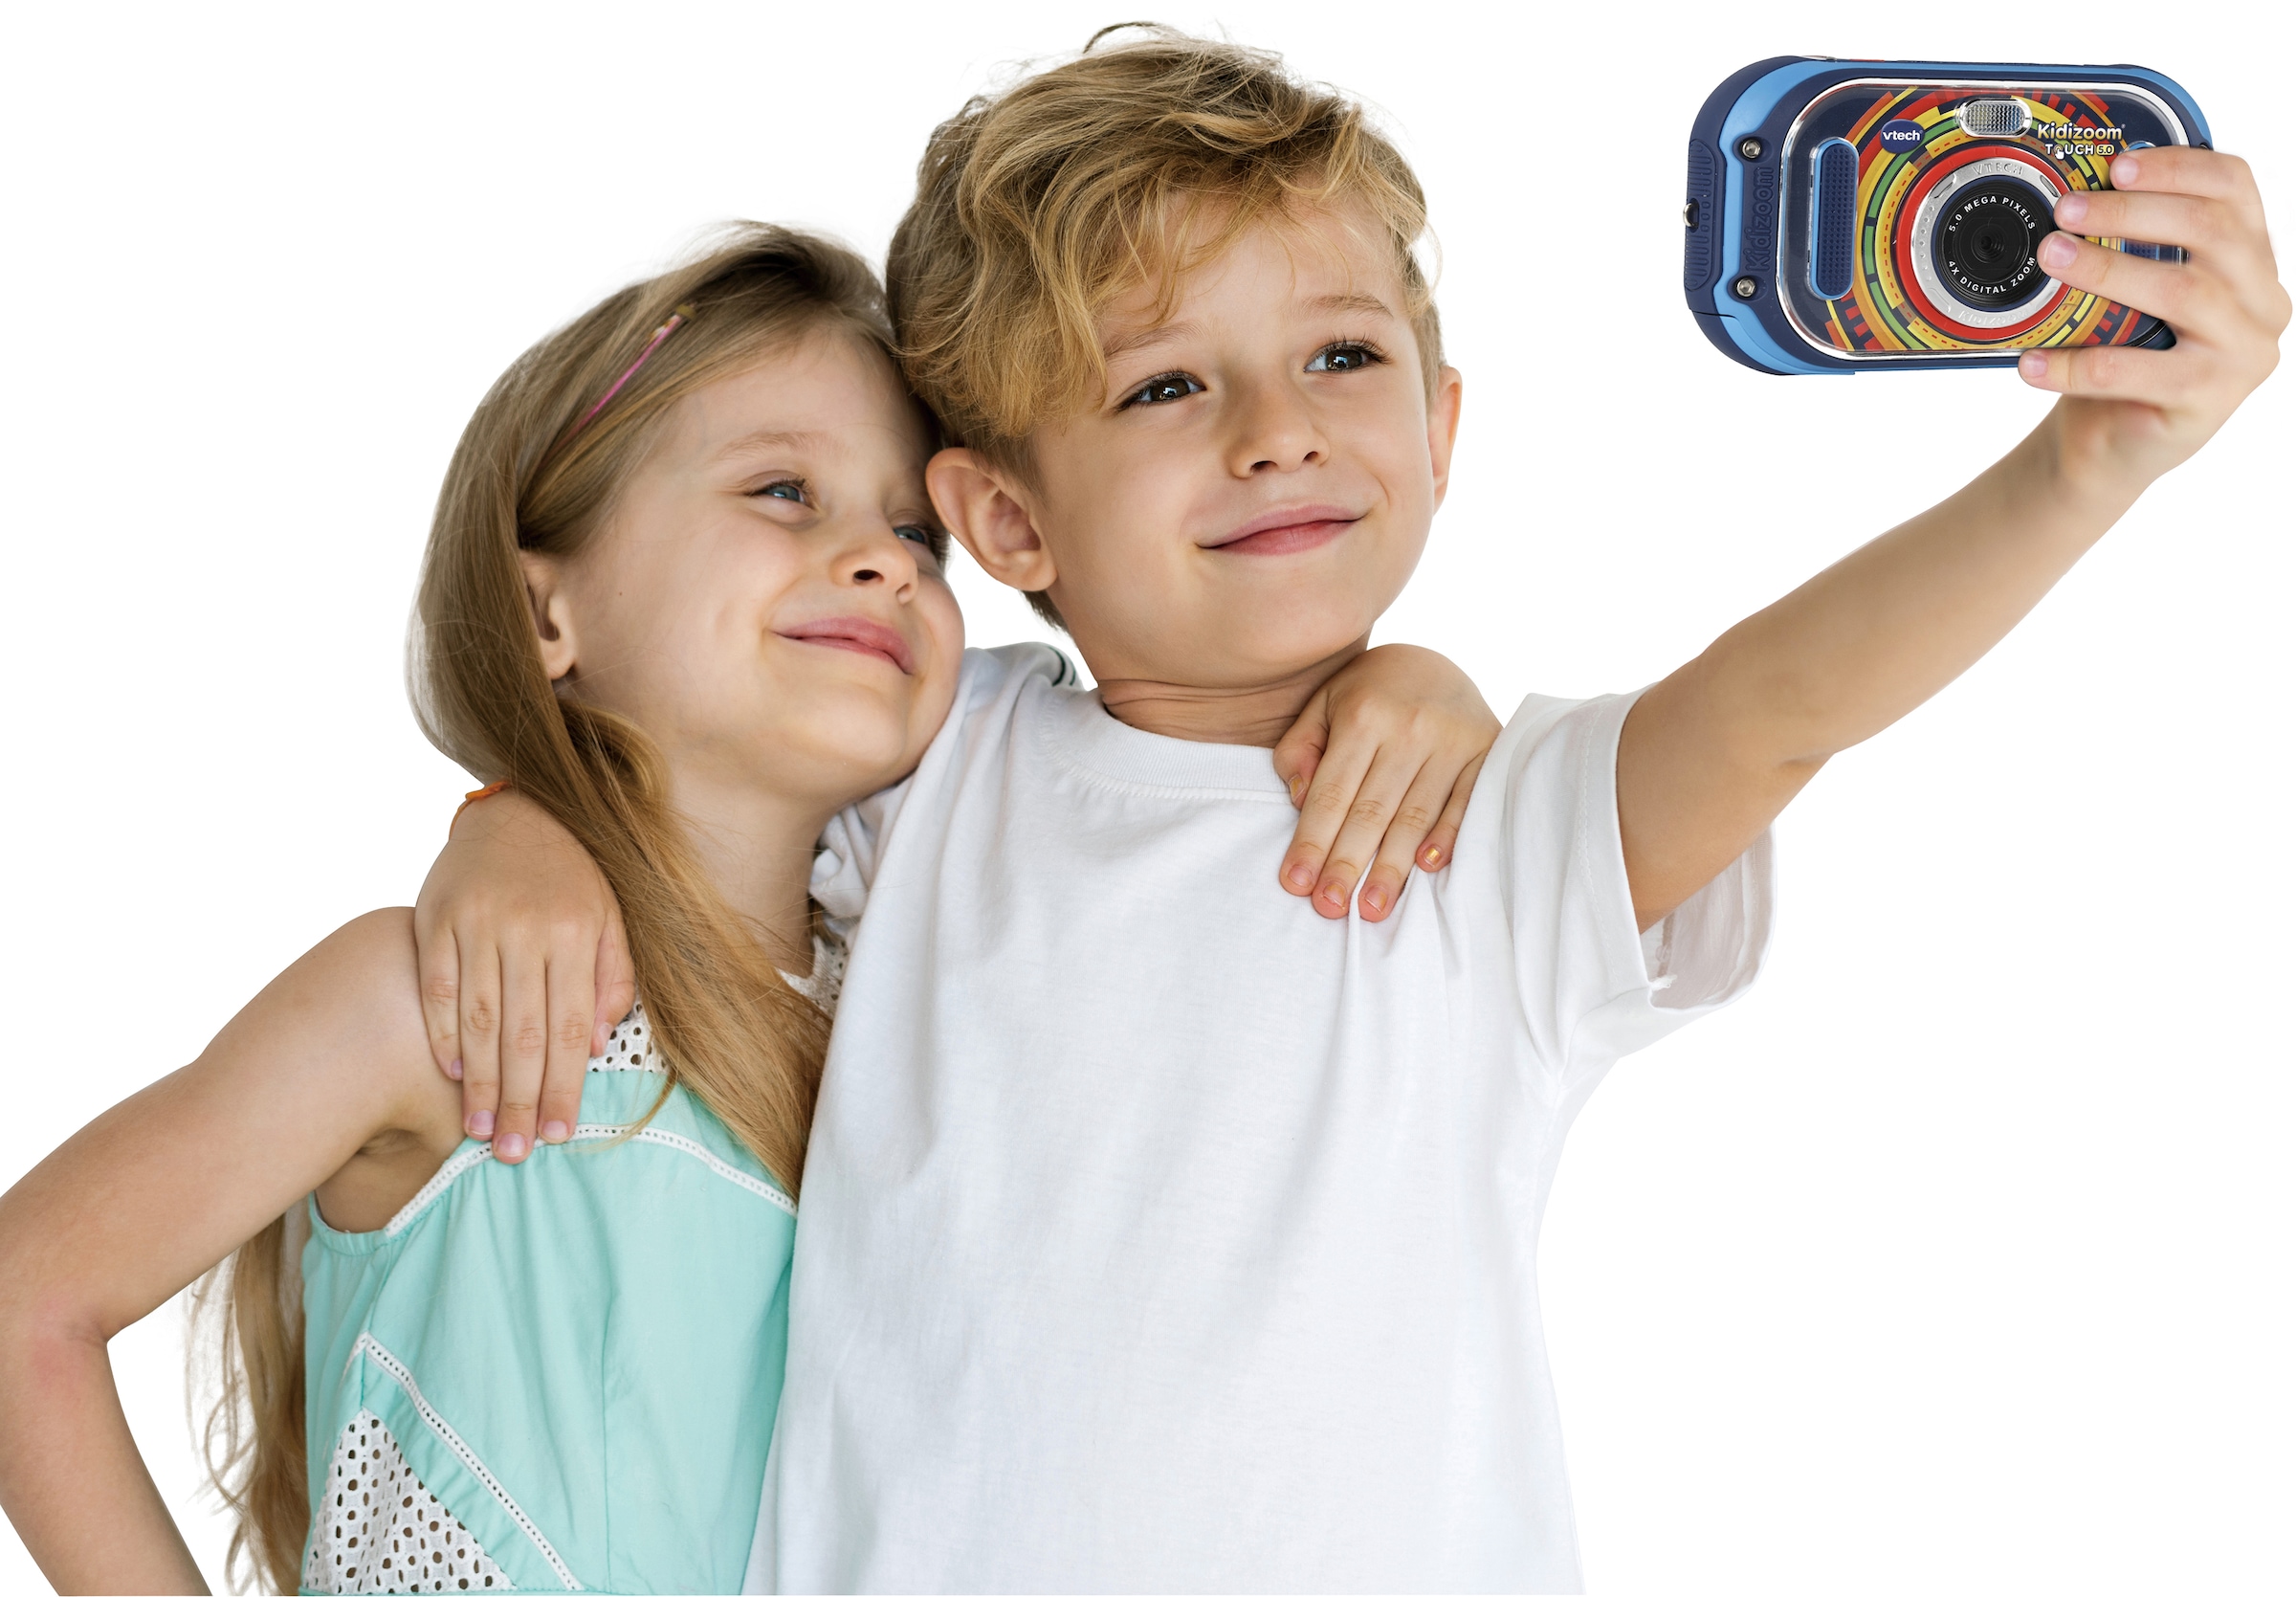 Vtech® Kinderkamera »KidiZoom Touch 5.0, blau«, 5 MP, inklusive Tragetasche  | BAUR